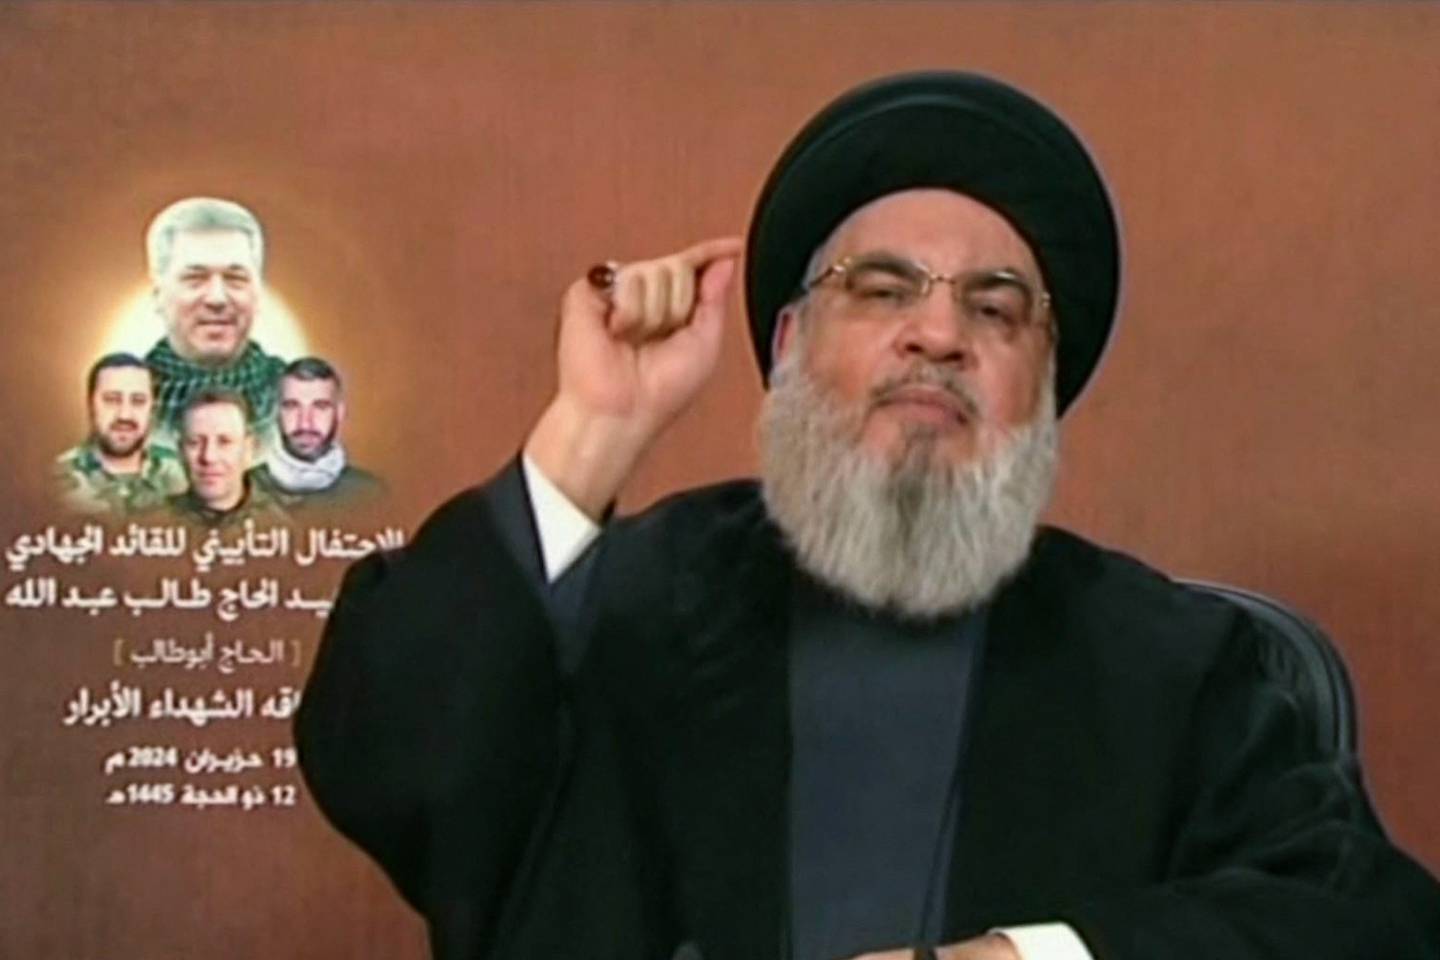 Una imagen tomada del canal al-Manar TV de Hezbolá muestra al jefe de la organización, Hassan Nasrallah, dando un discurso televisado desde un lugar no revelado en el Líbano. Nasrallah advirtió que 'ningún lugar' en Israel se salvaría en caso de una guerra total contra el grupo libanés.